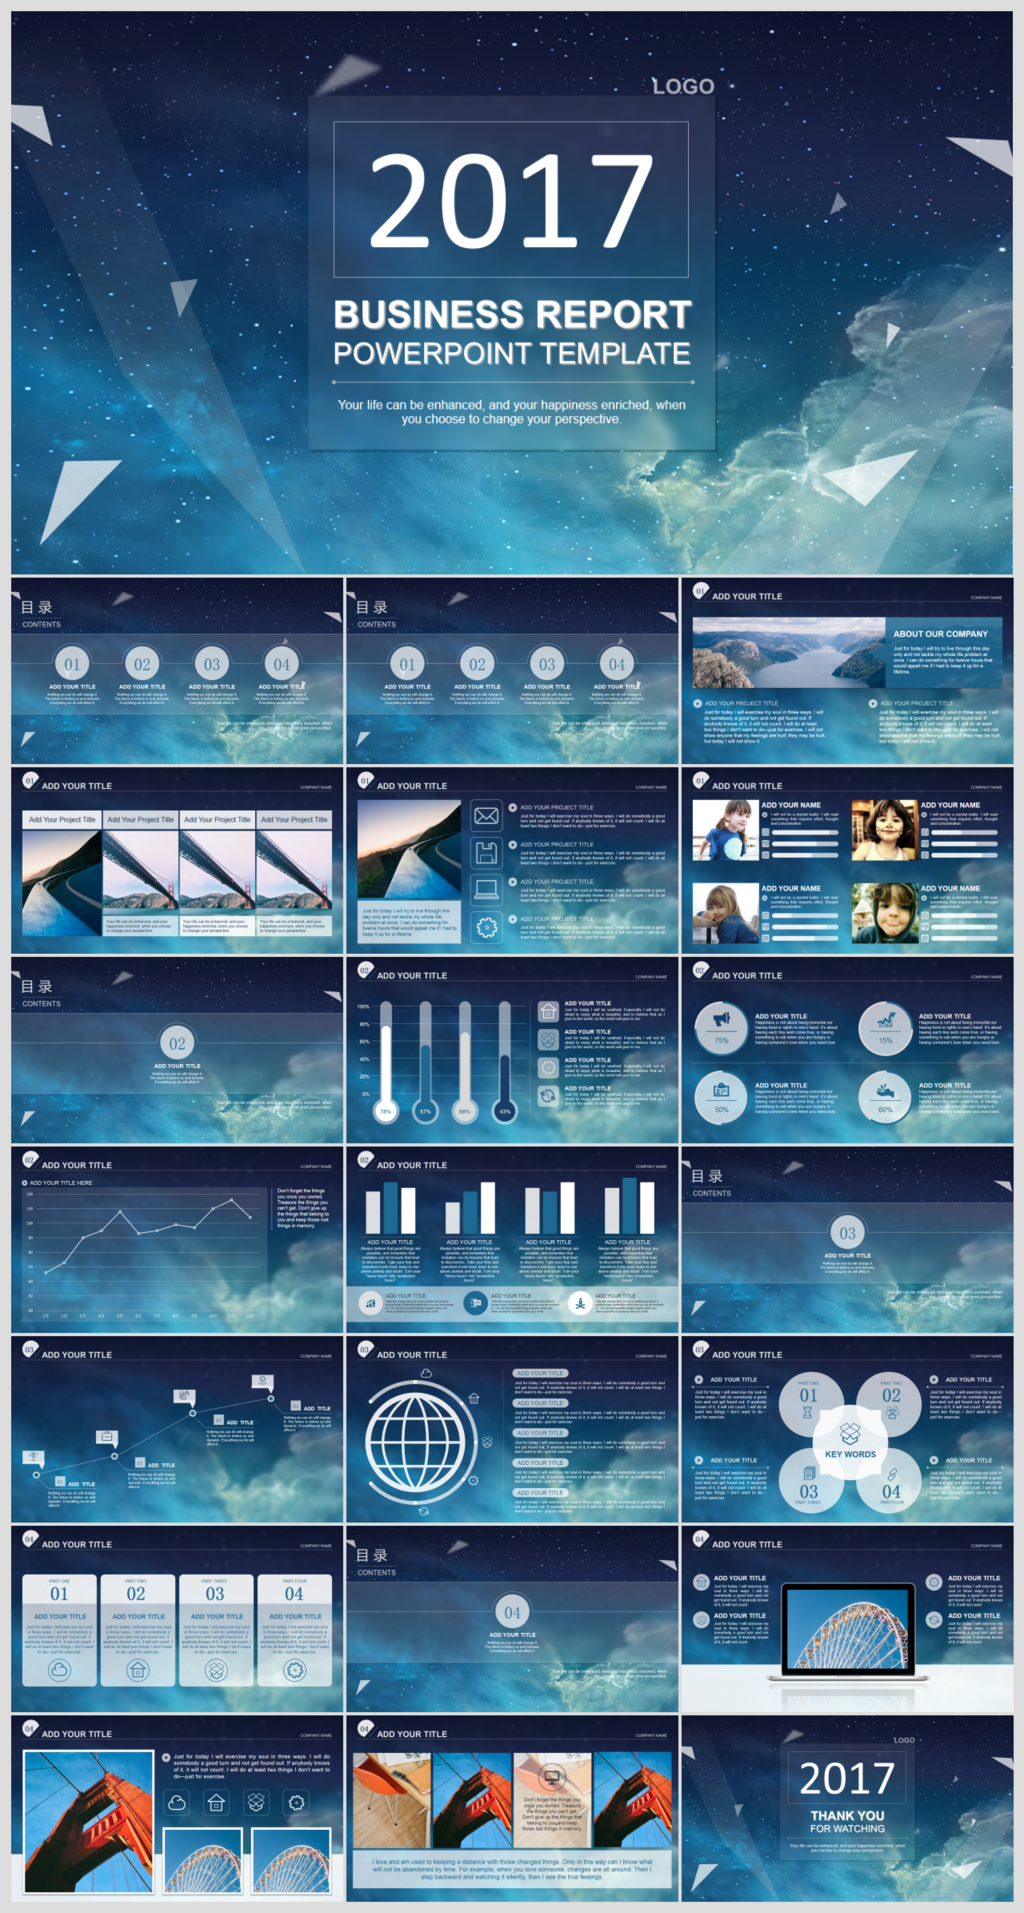 蓝色星空IOS风格企业商务PPT模板设计